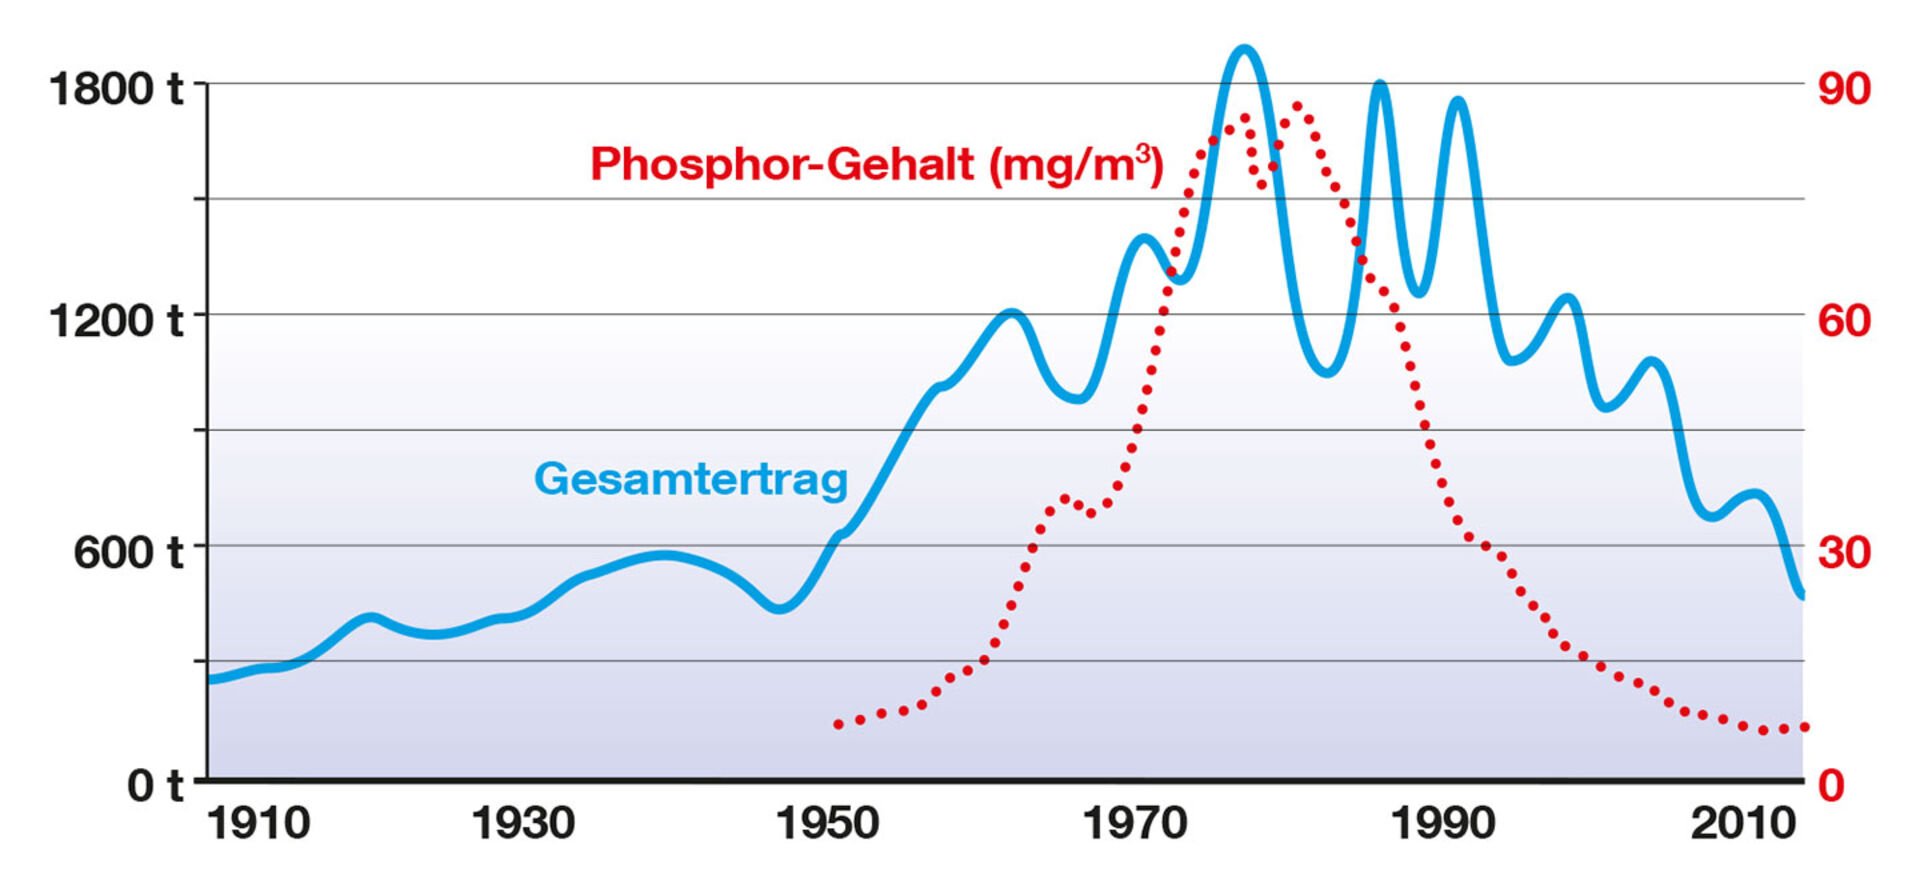  Gesamtertrag der Berufsfischerei des Bodensee-Obersees im Zusammenhang mit dem Phosphor-Gehalt.  